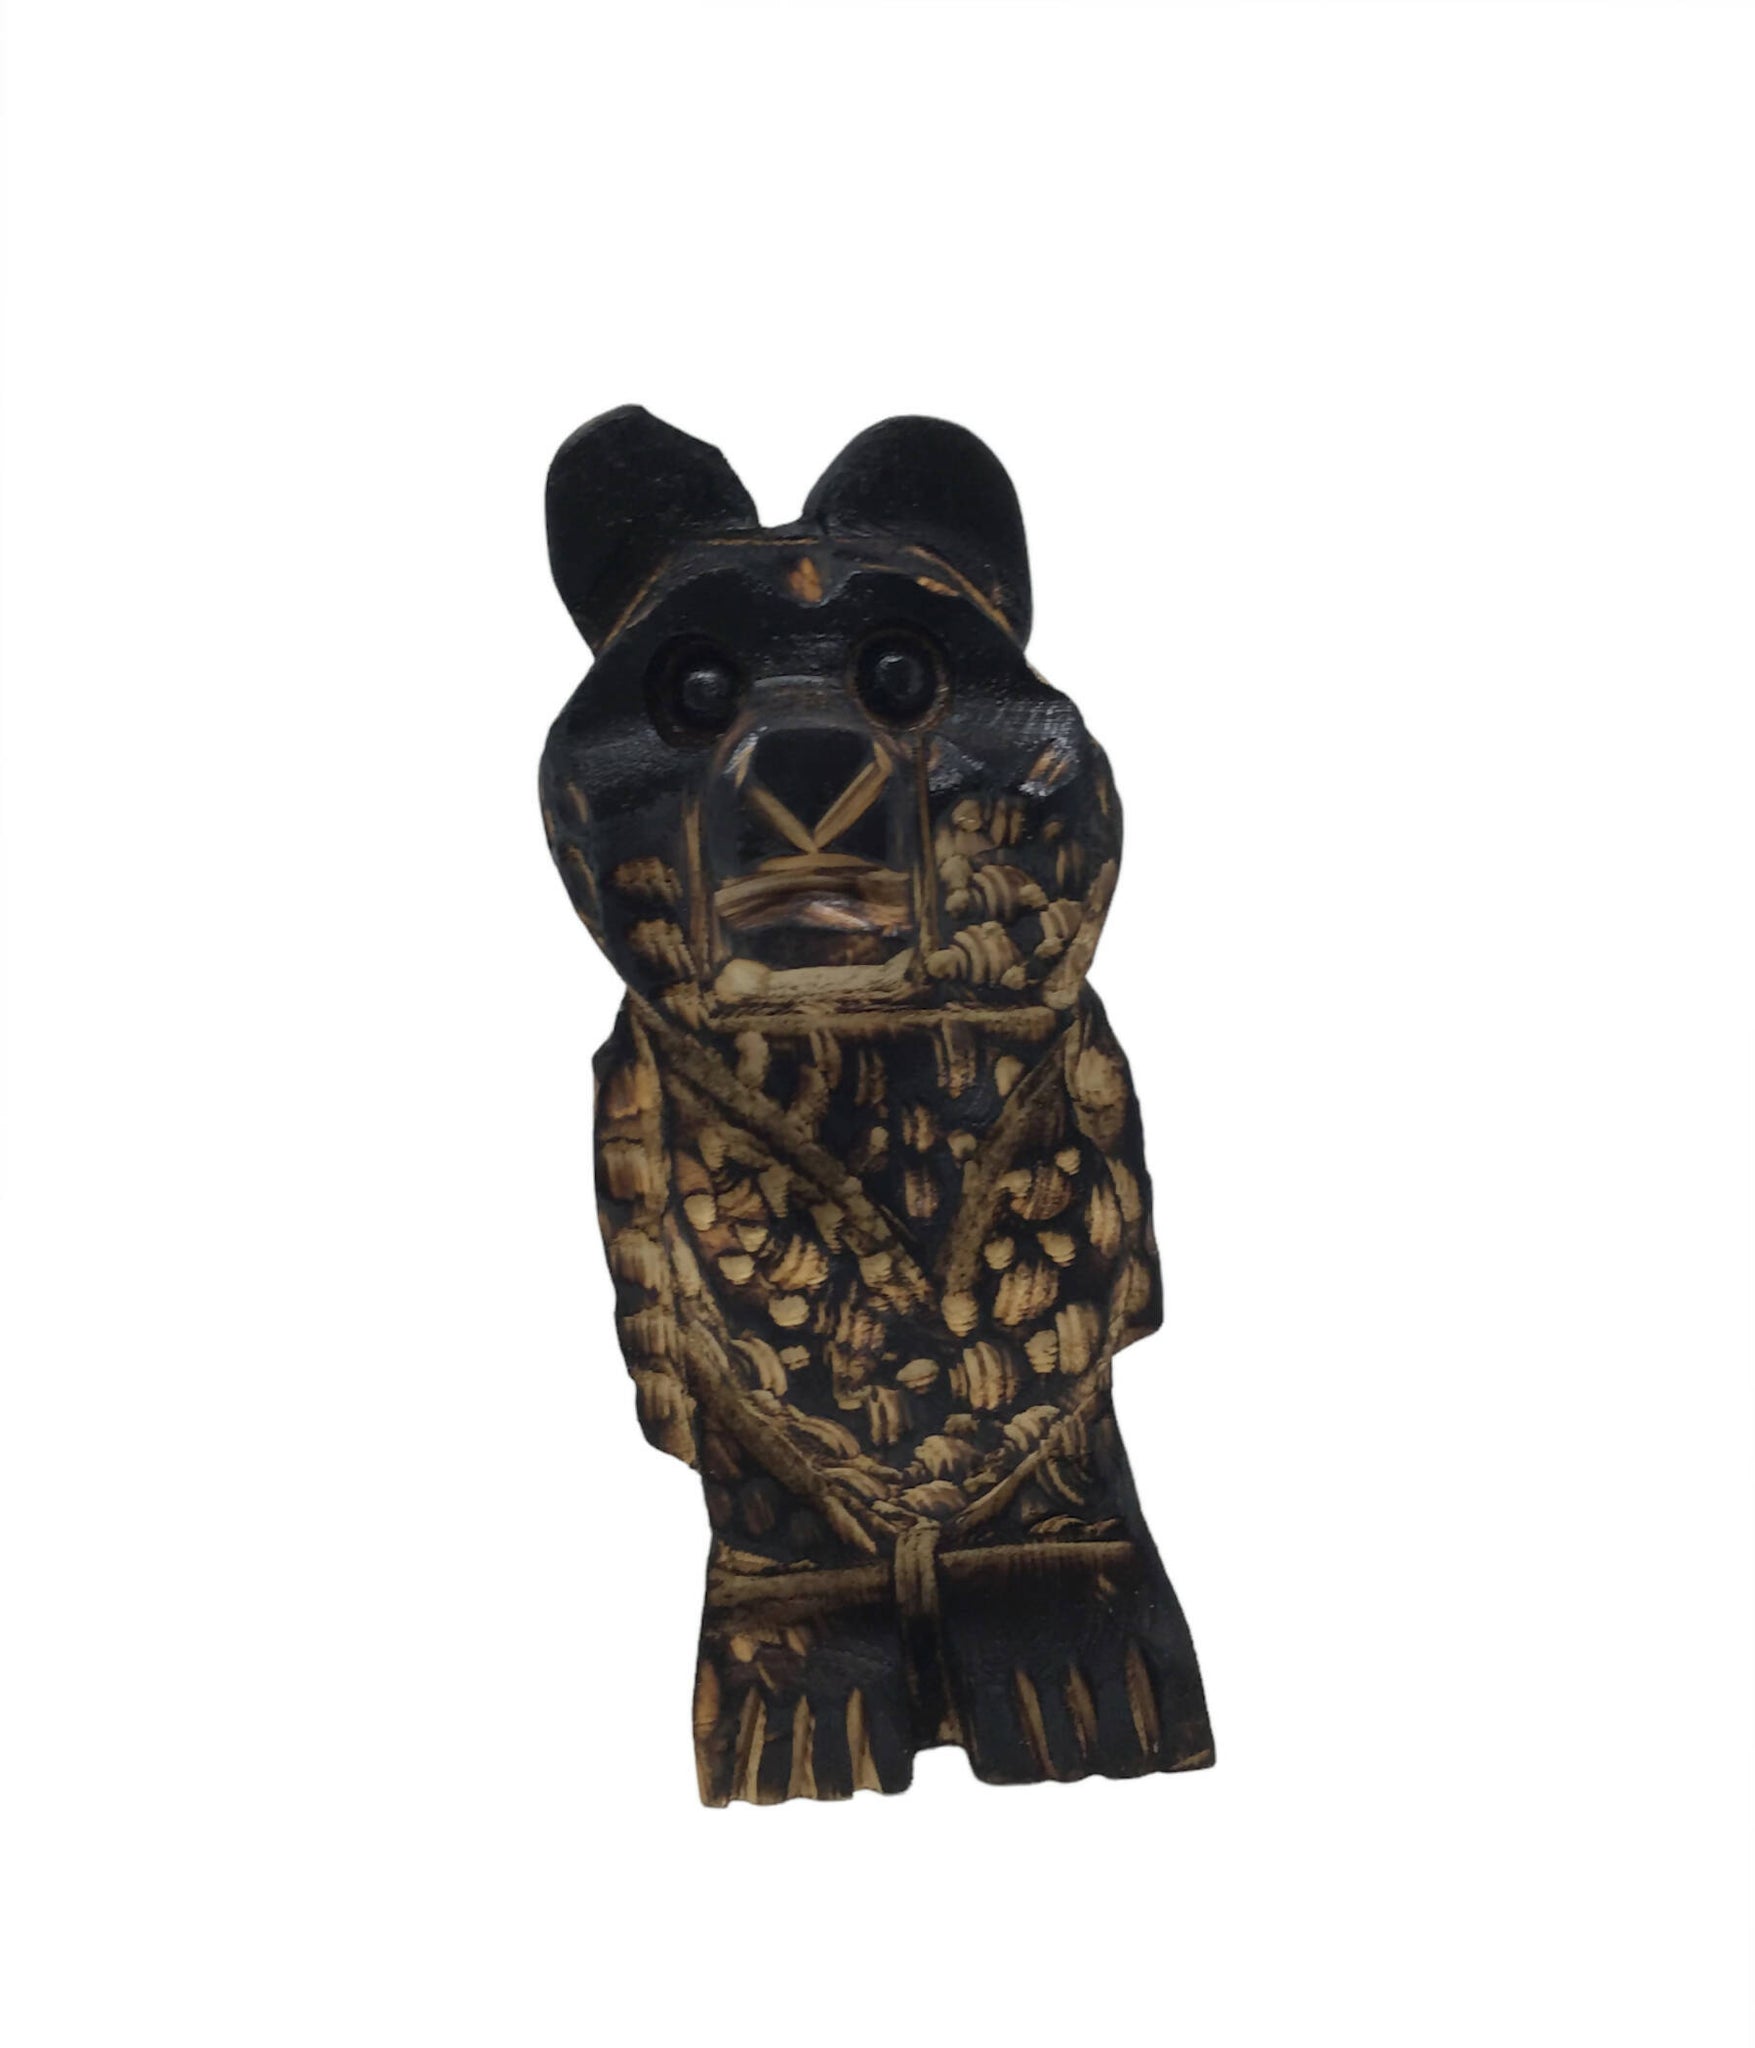 Bear Wood Carvings